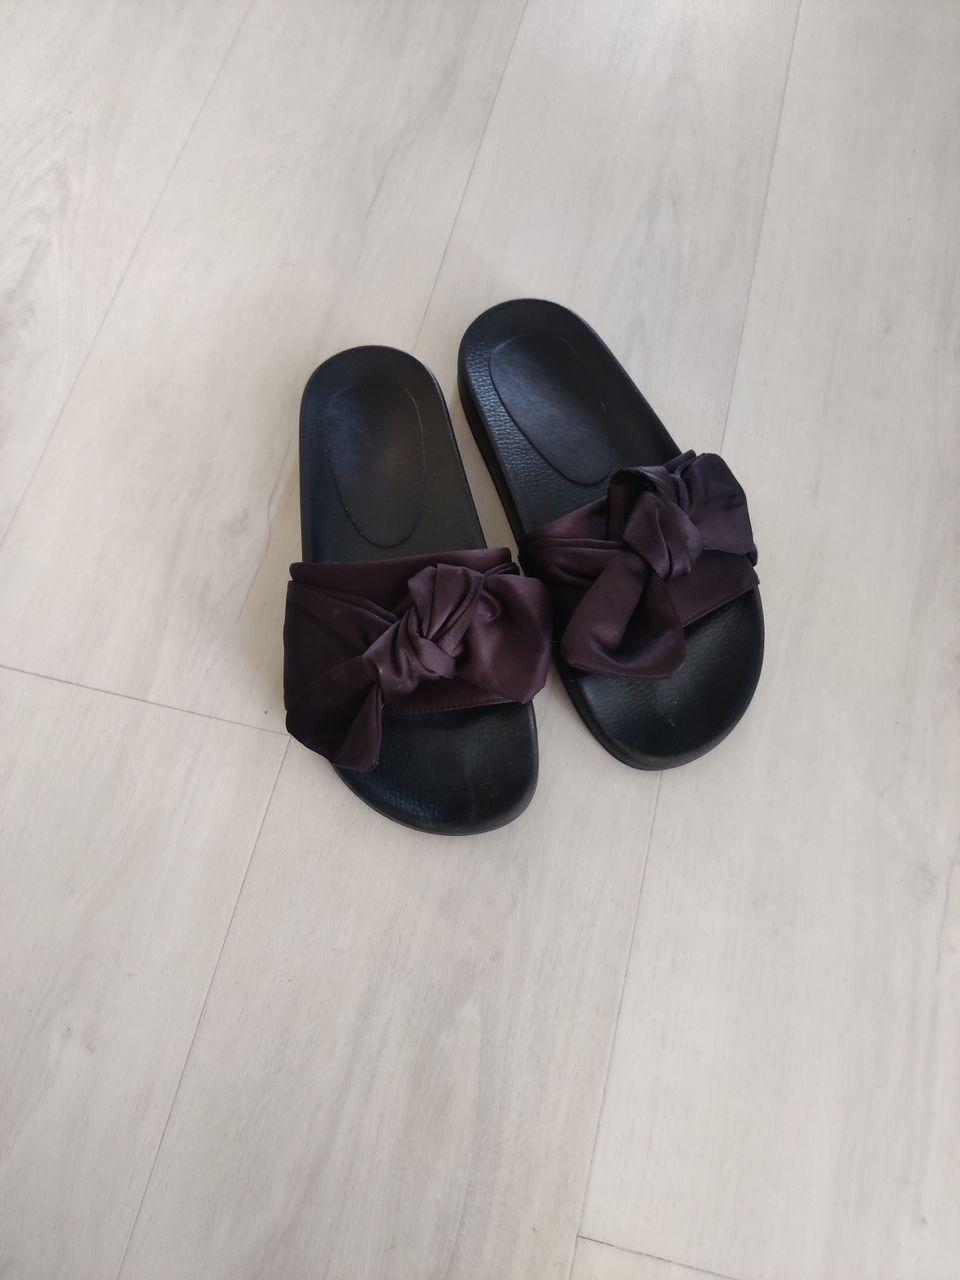 Mustat sandaalit/lipokkaat mustilla ruseteilla